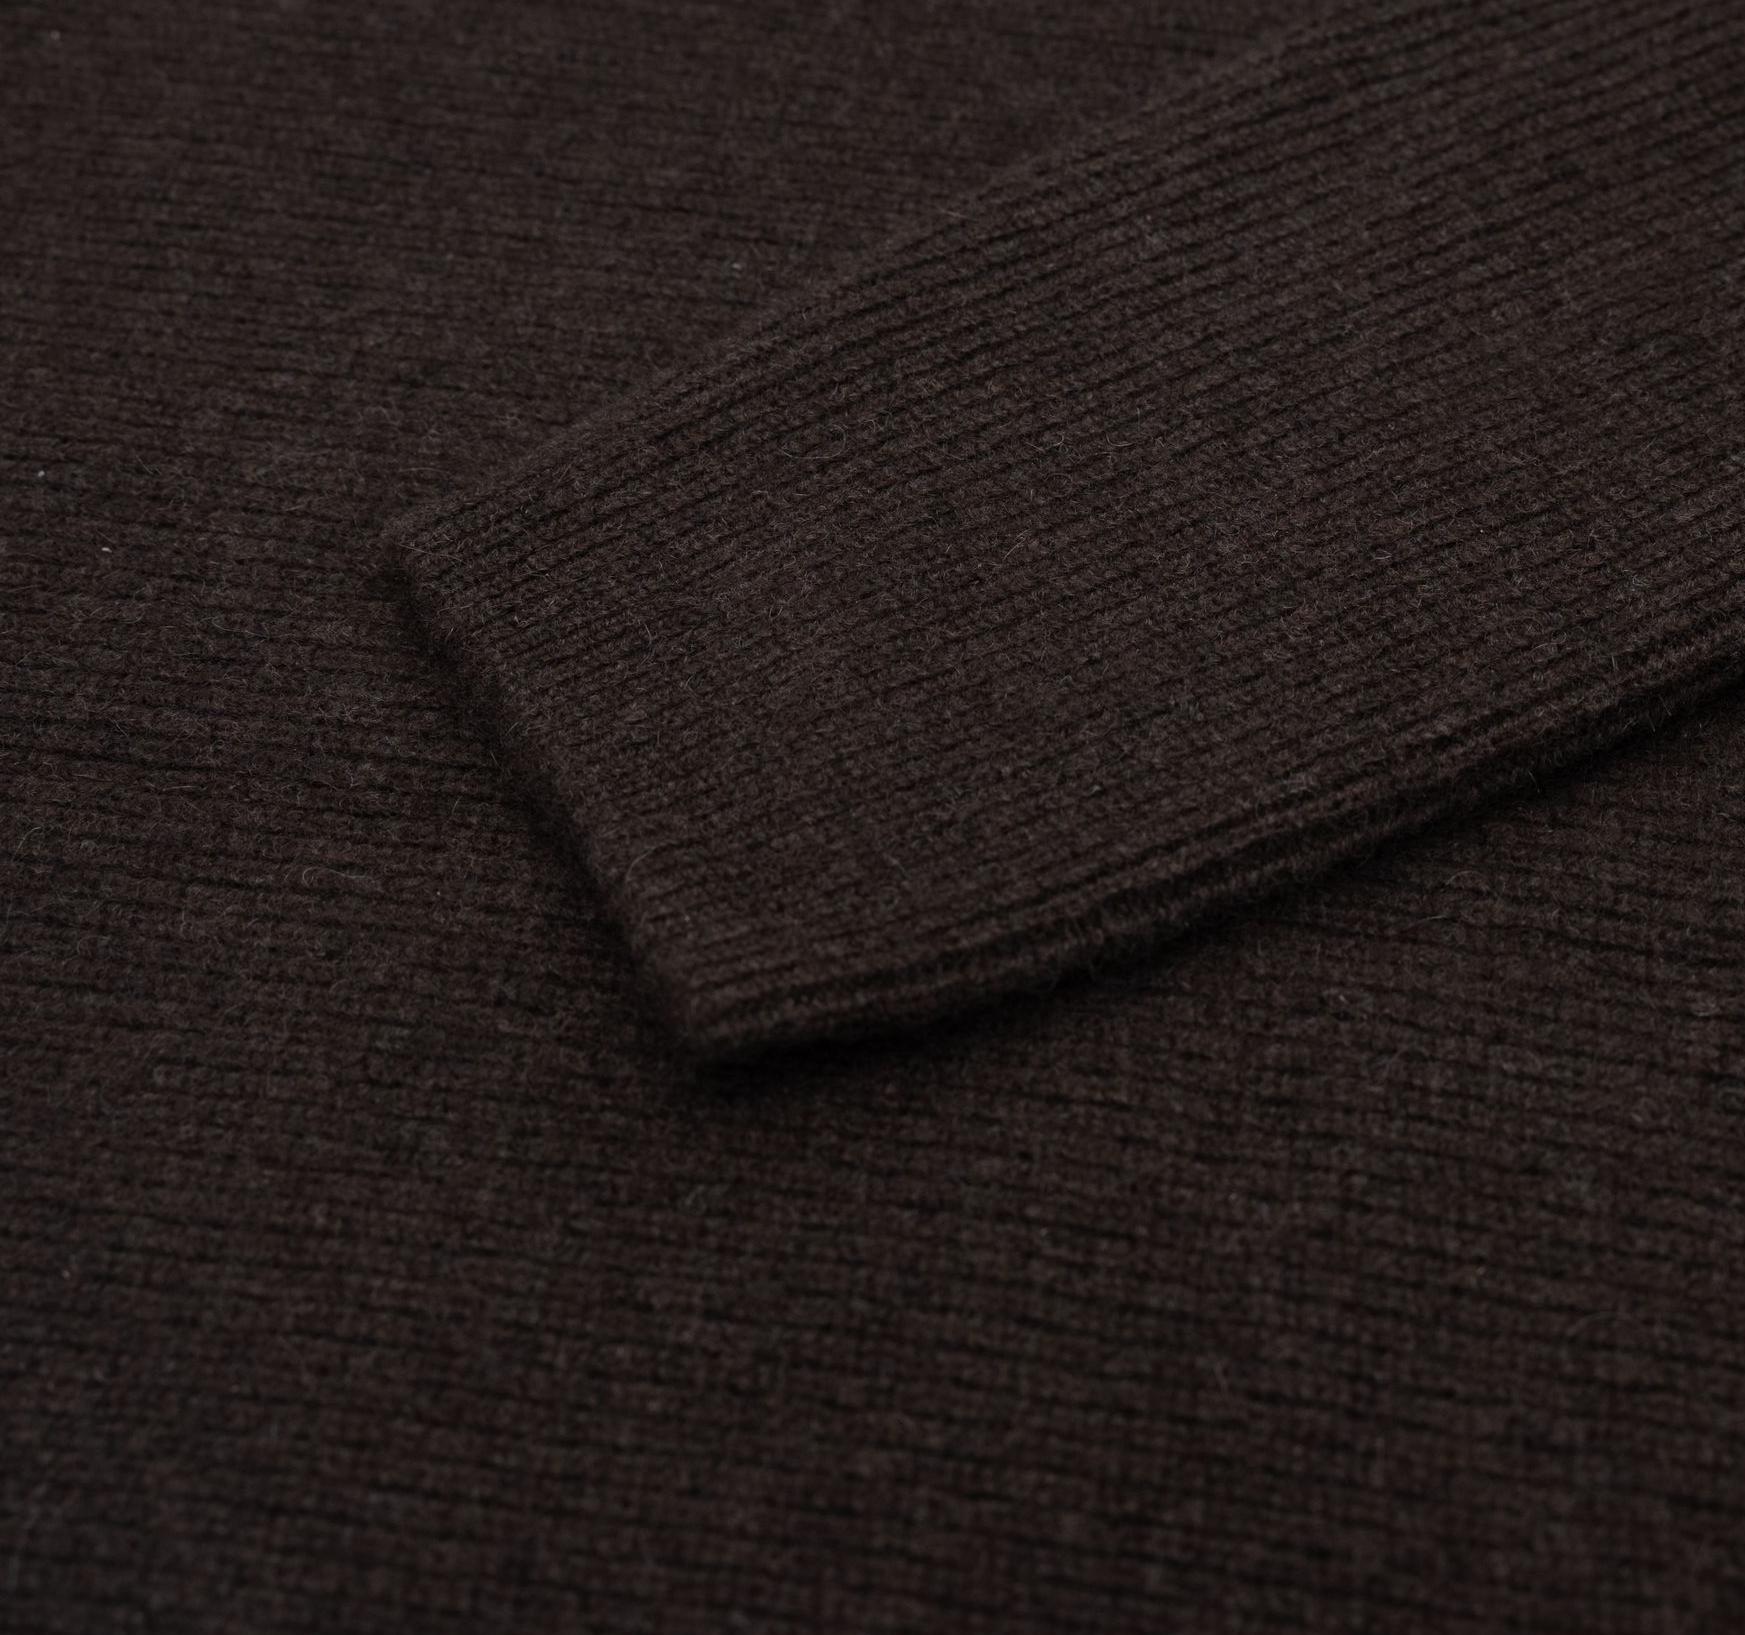 Detail eines Ärmels von dem dunkelbraunen Loose-Fit Pullover aus Yakwolle